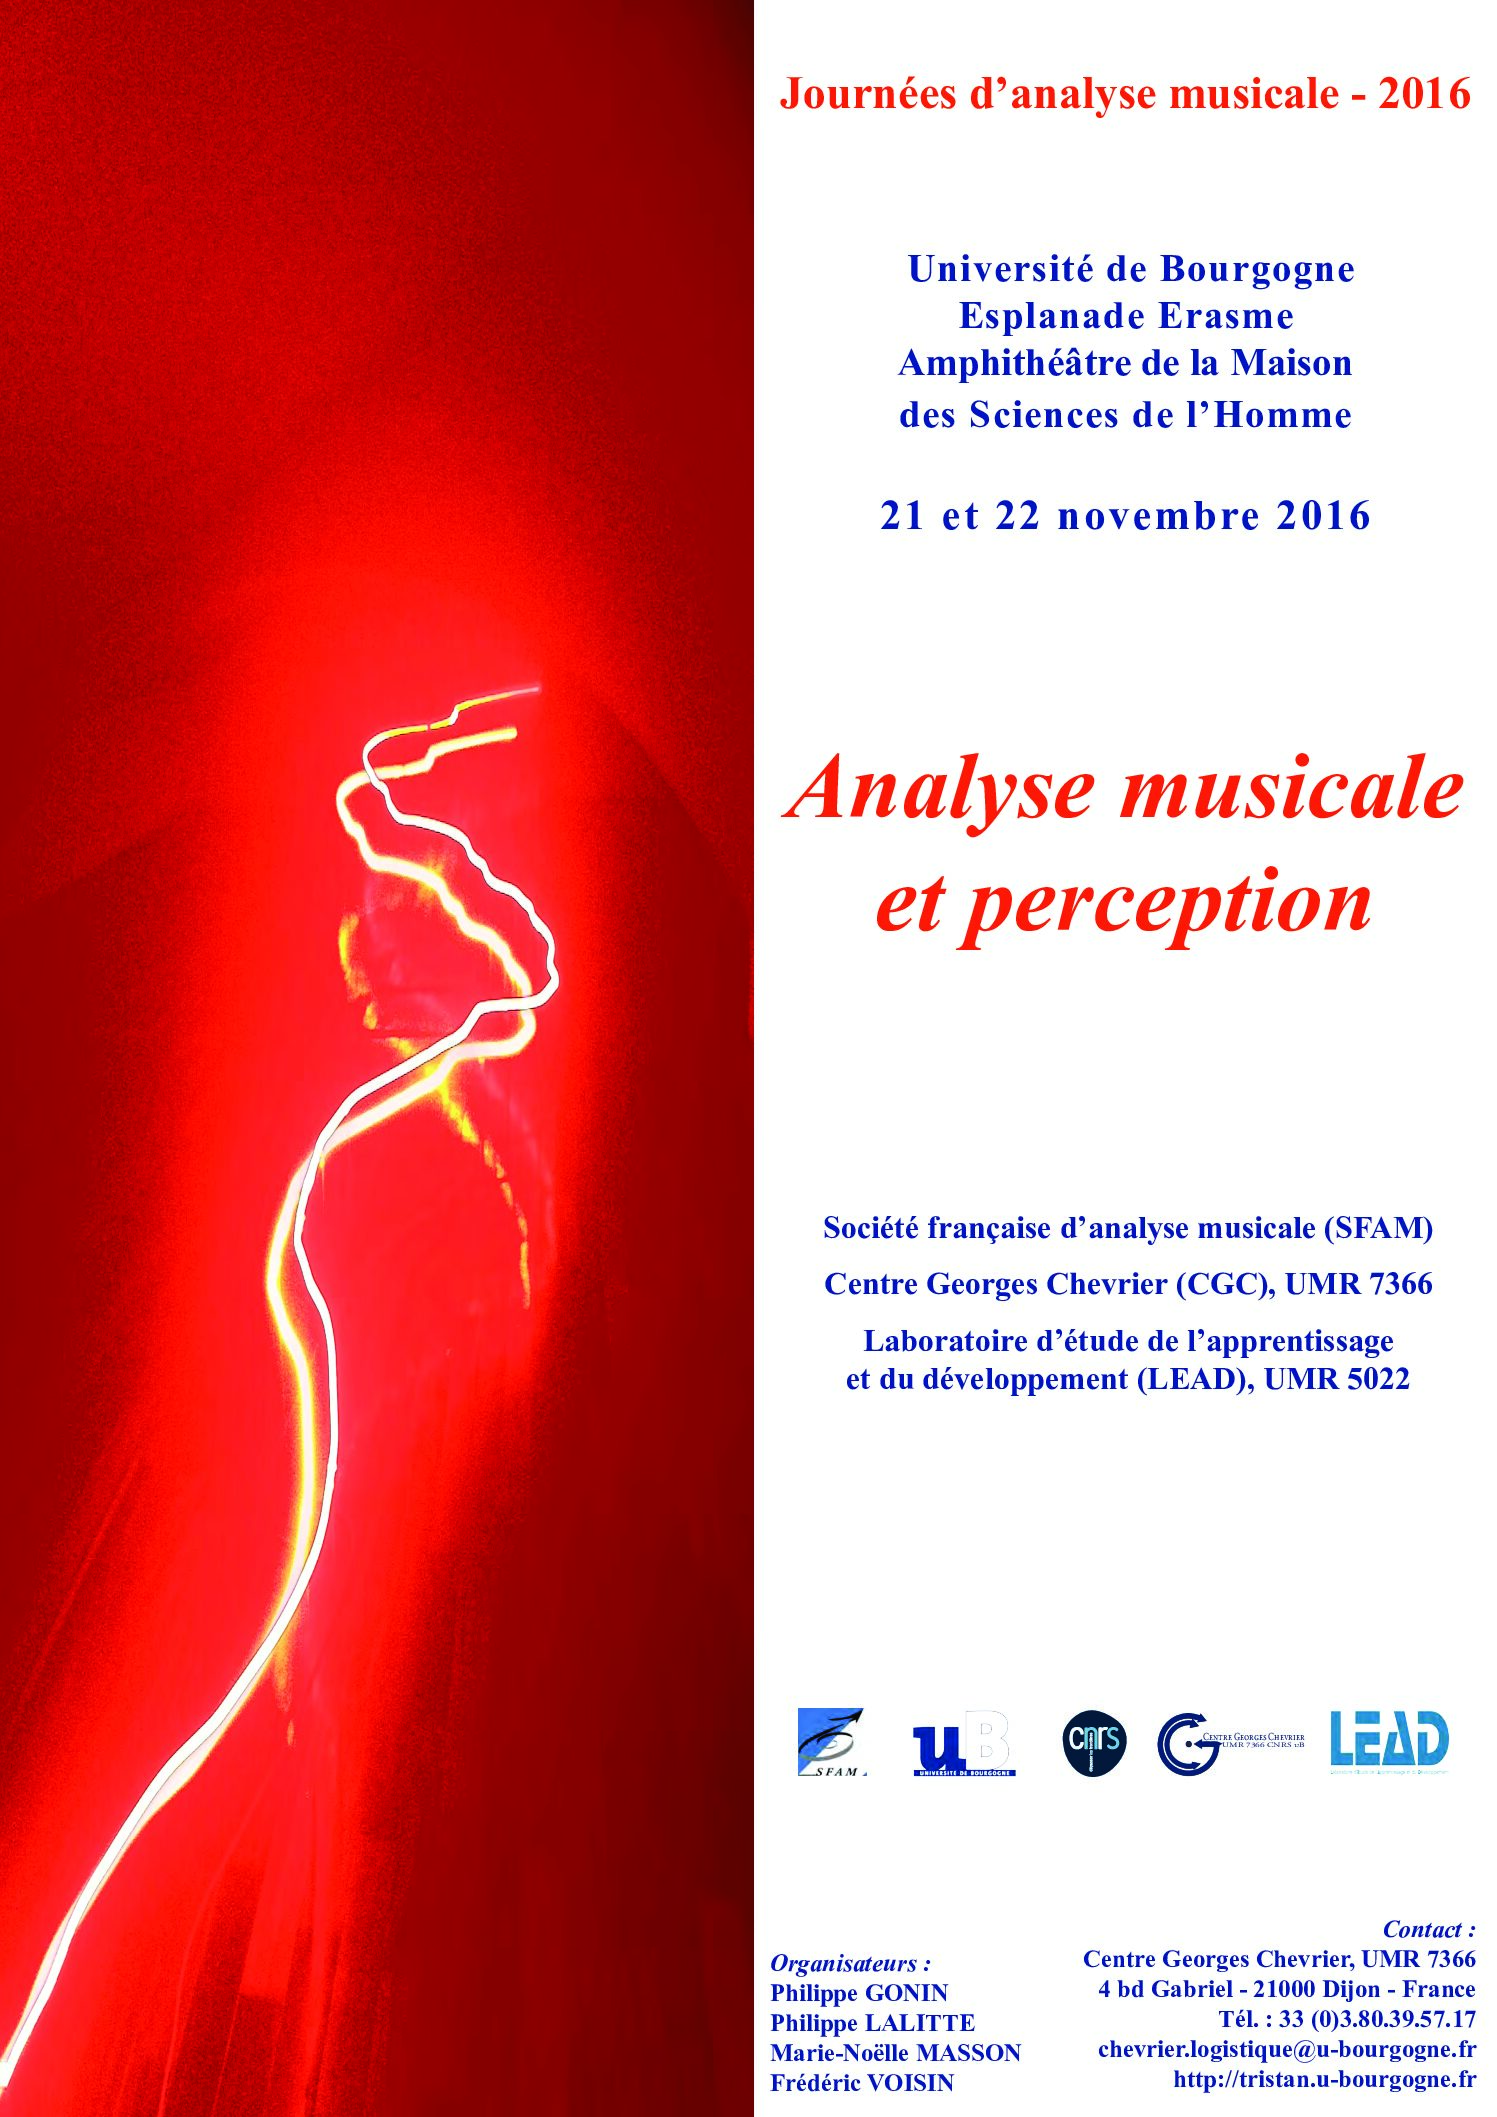 Lire la suite à propos de l’article JAM 2016 — Analyse musicale et perception (MSH Dijon, Université de Bourgogne)